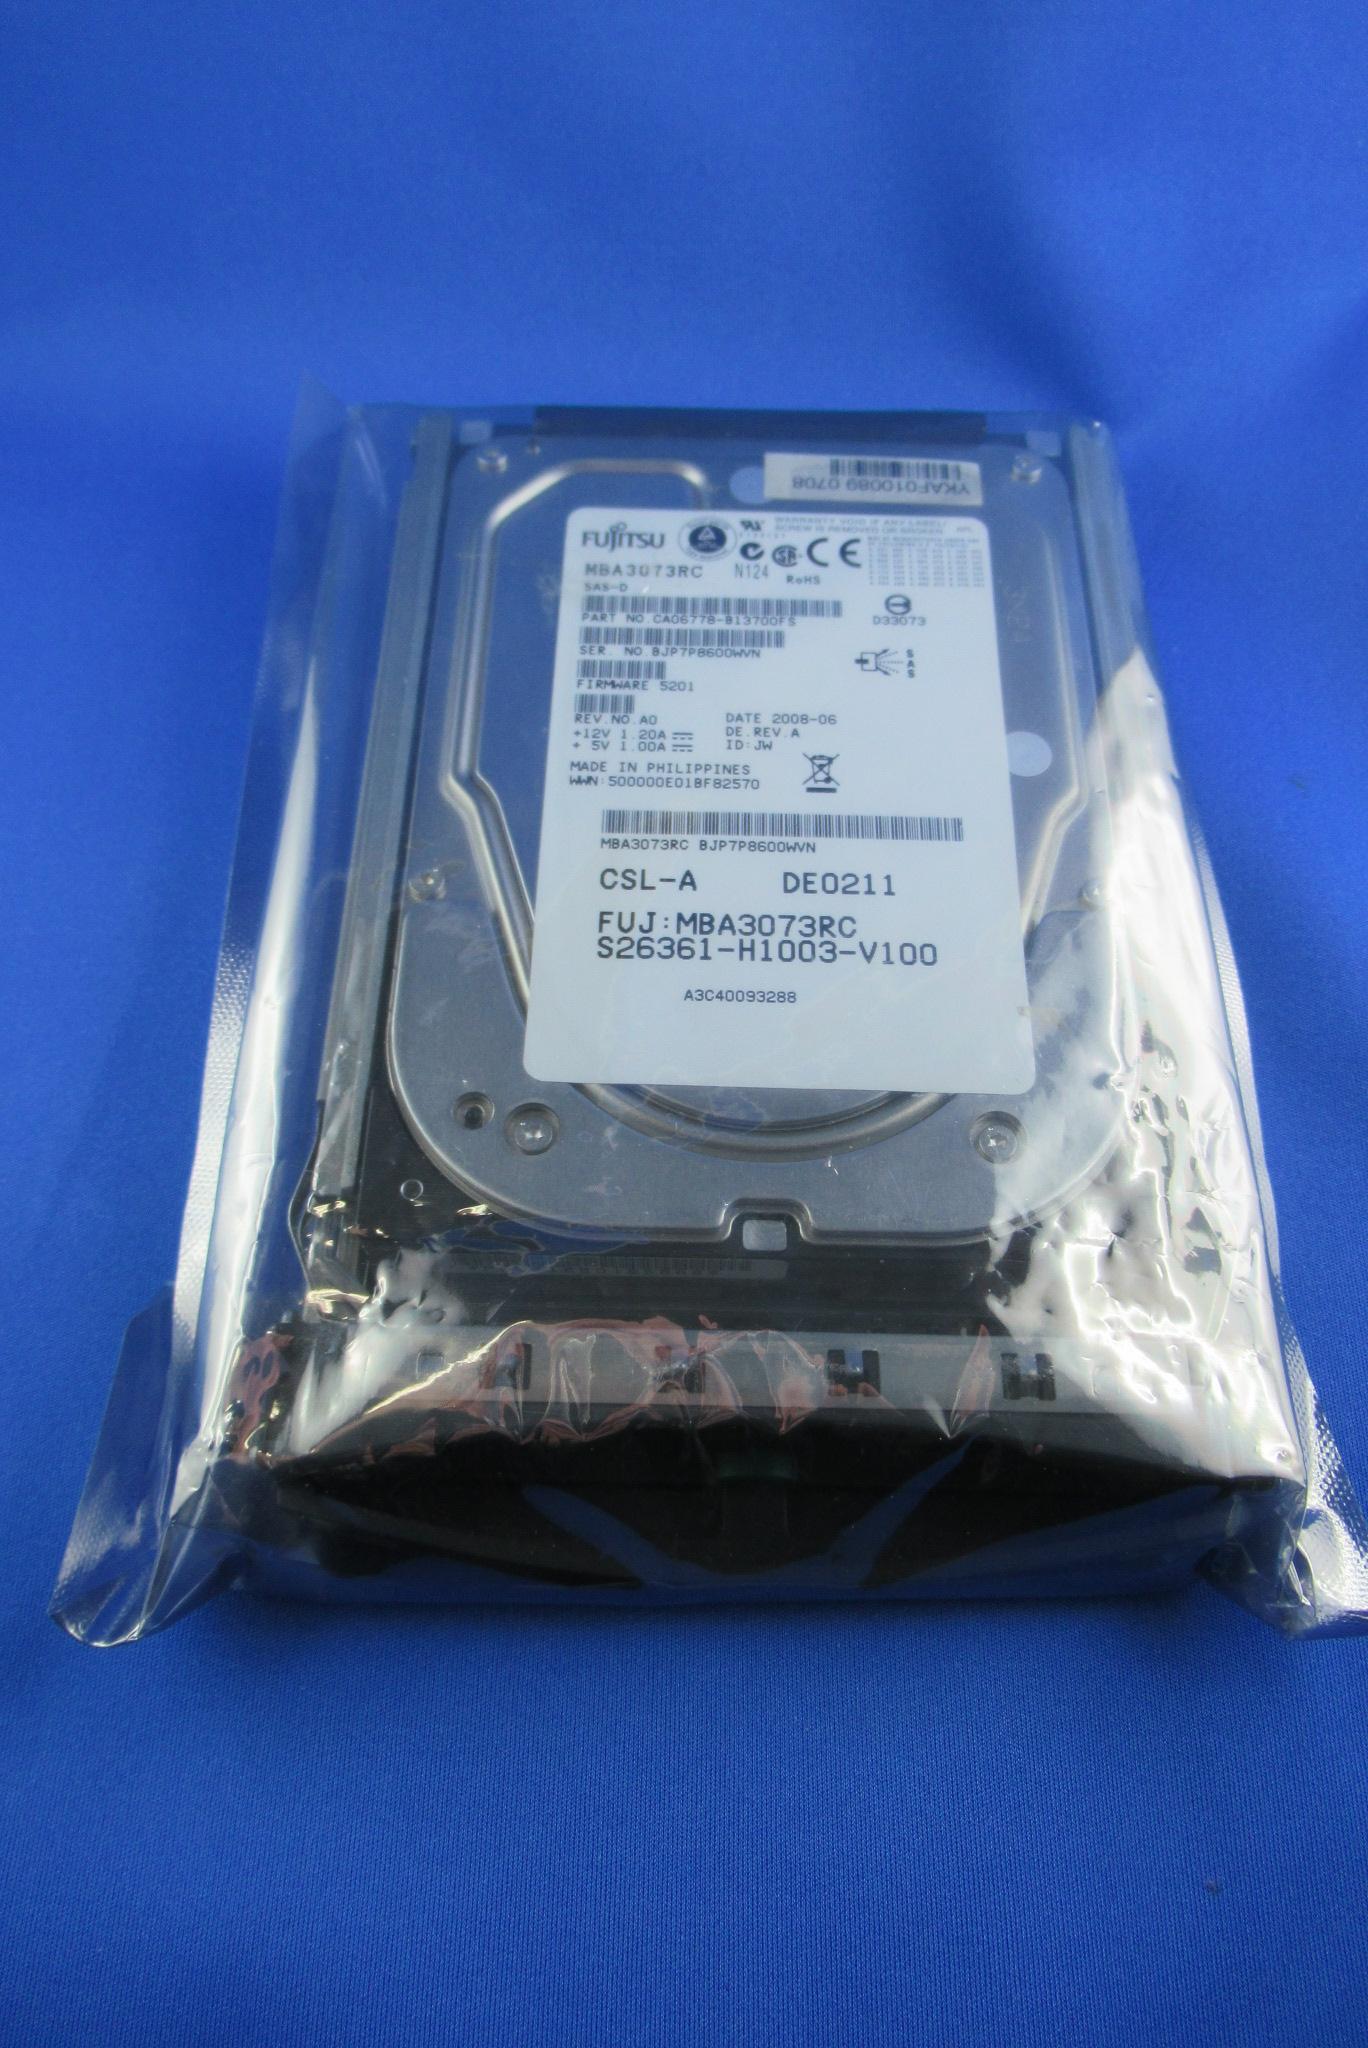 Festplatte 3,5" 73 GB SAS 3,5" f. Primergy FSC S26361-F3204-L573